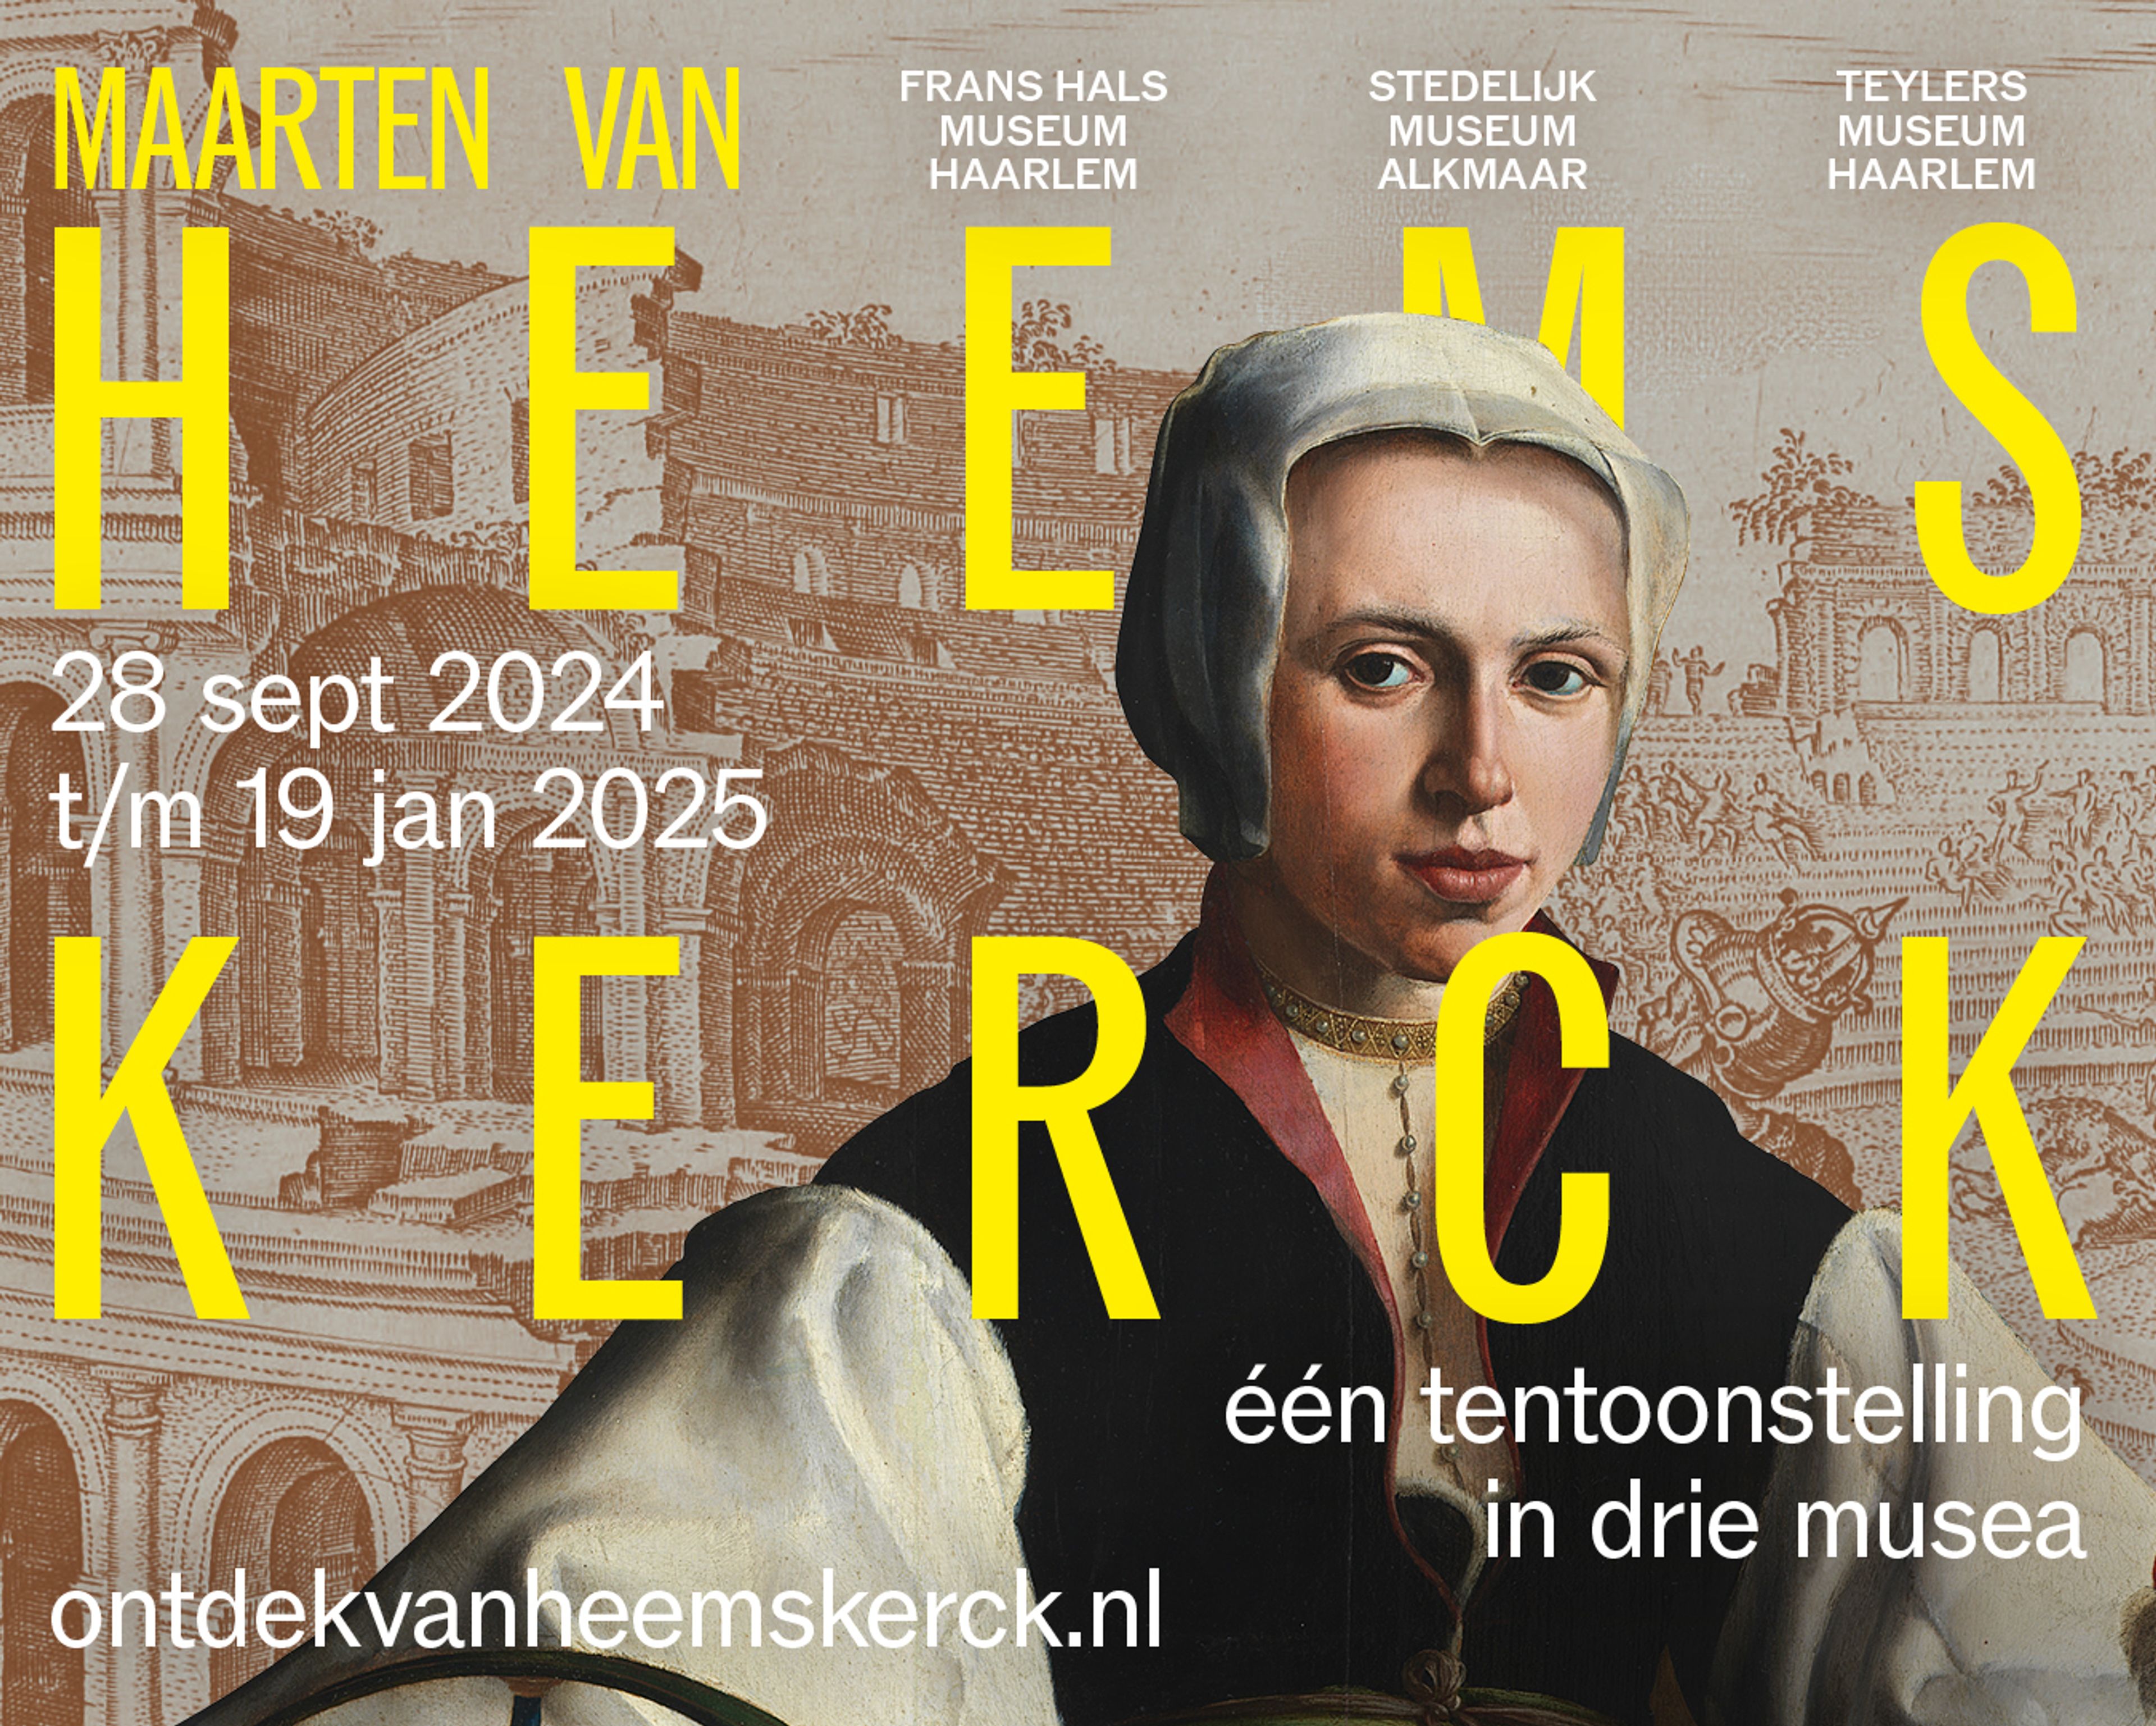 Het campagnebeeld van de tentoonstelling Maarten van Heemskerck.